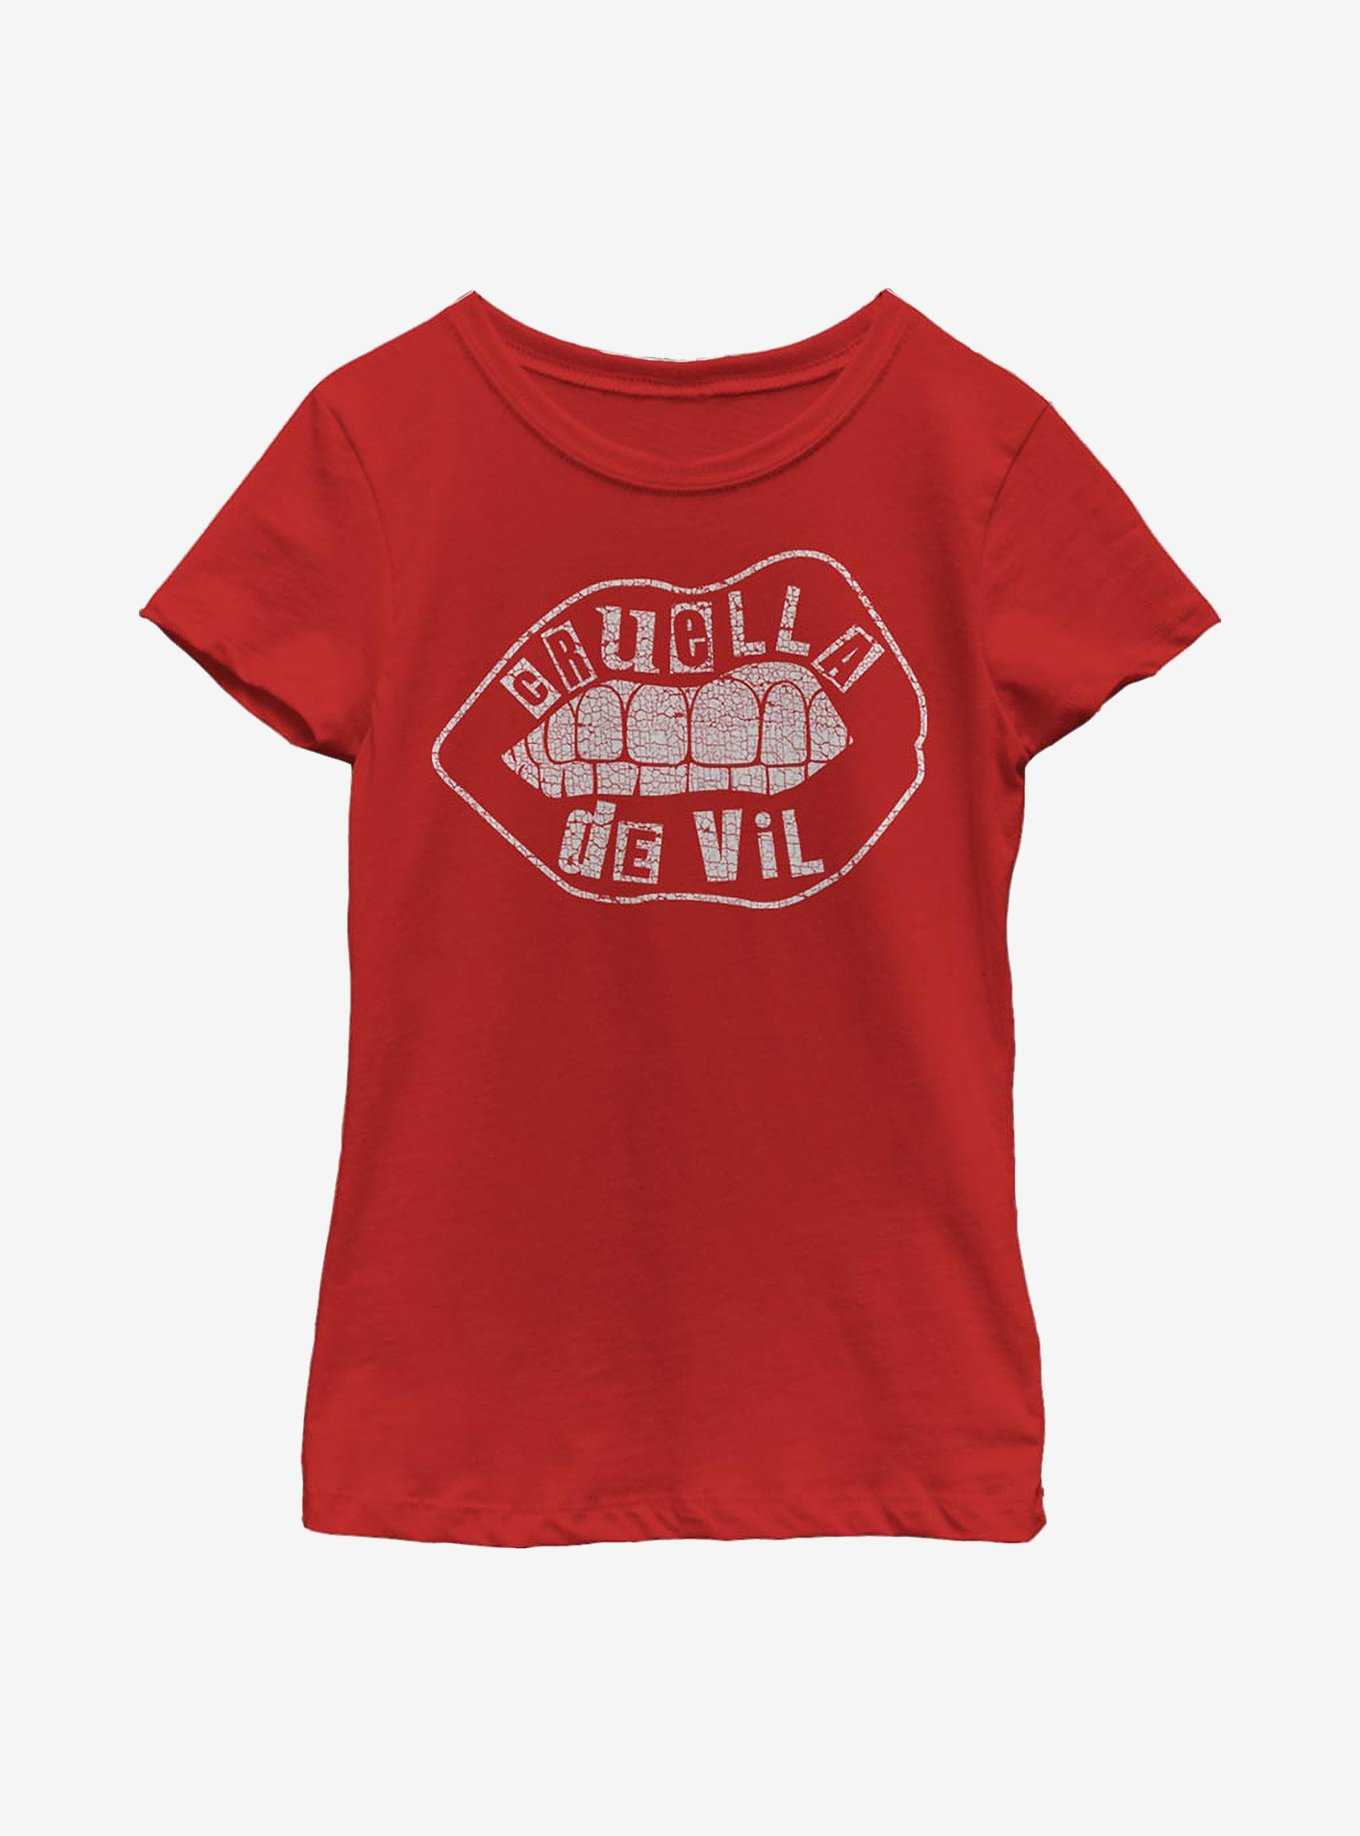 Disney Cruella De Vil Lip Design Youth Girls T-Shirt, , hi-res